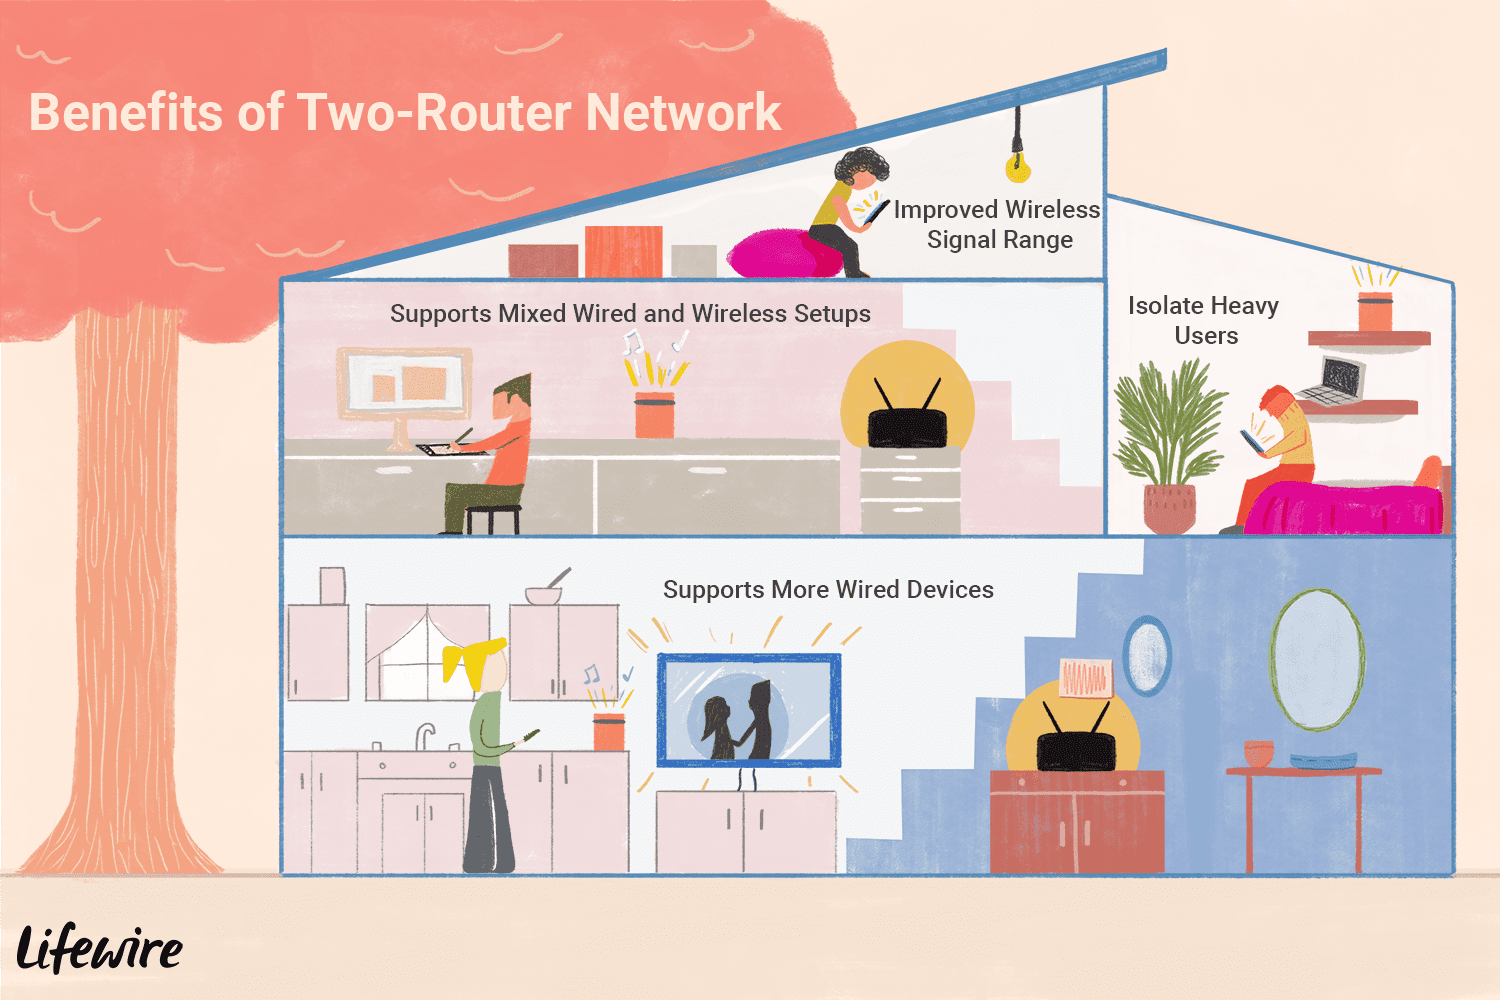 Иллюстрация того, как два маршрутизатора могут использоваться в многоэтажном доме.